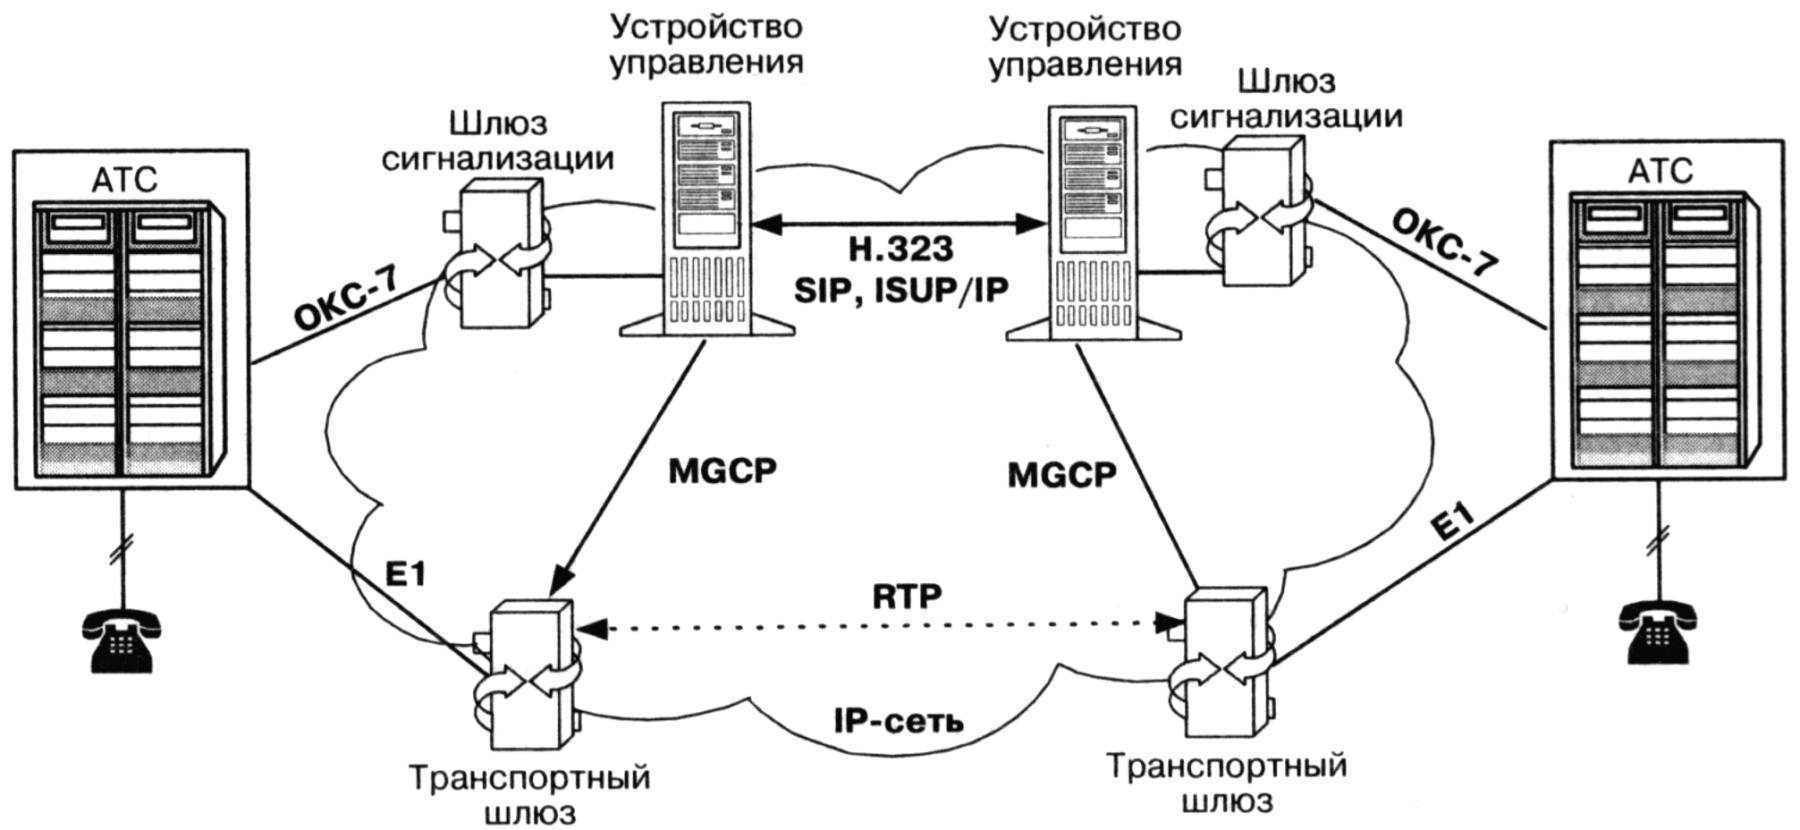 Доч атс. Протокол управления шлюзом Megaco/h.248. Протоколы управления MGCP, H.248. Шлюз IP телефонии схема. Логическая схема организации связи VOIP по протоколу SIP.